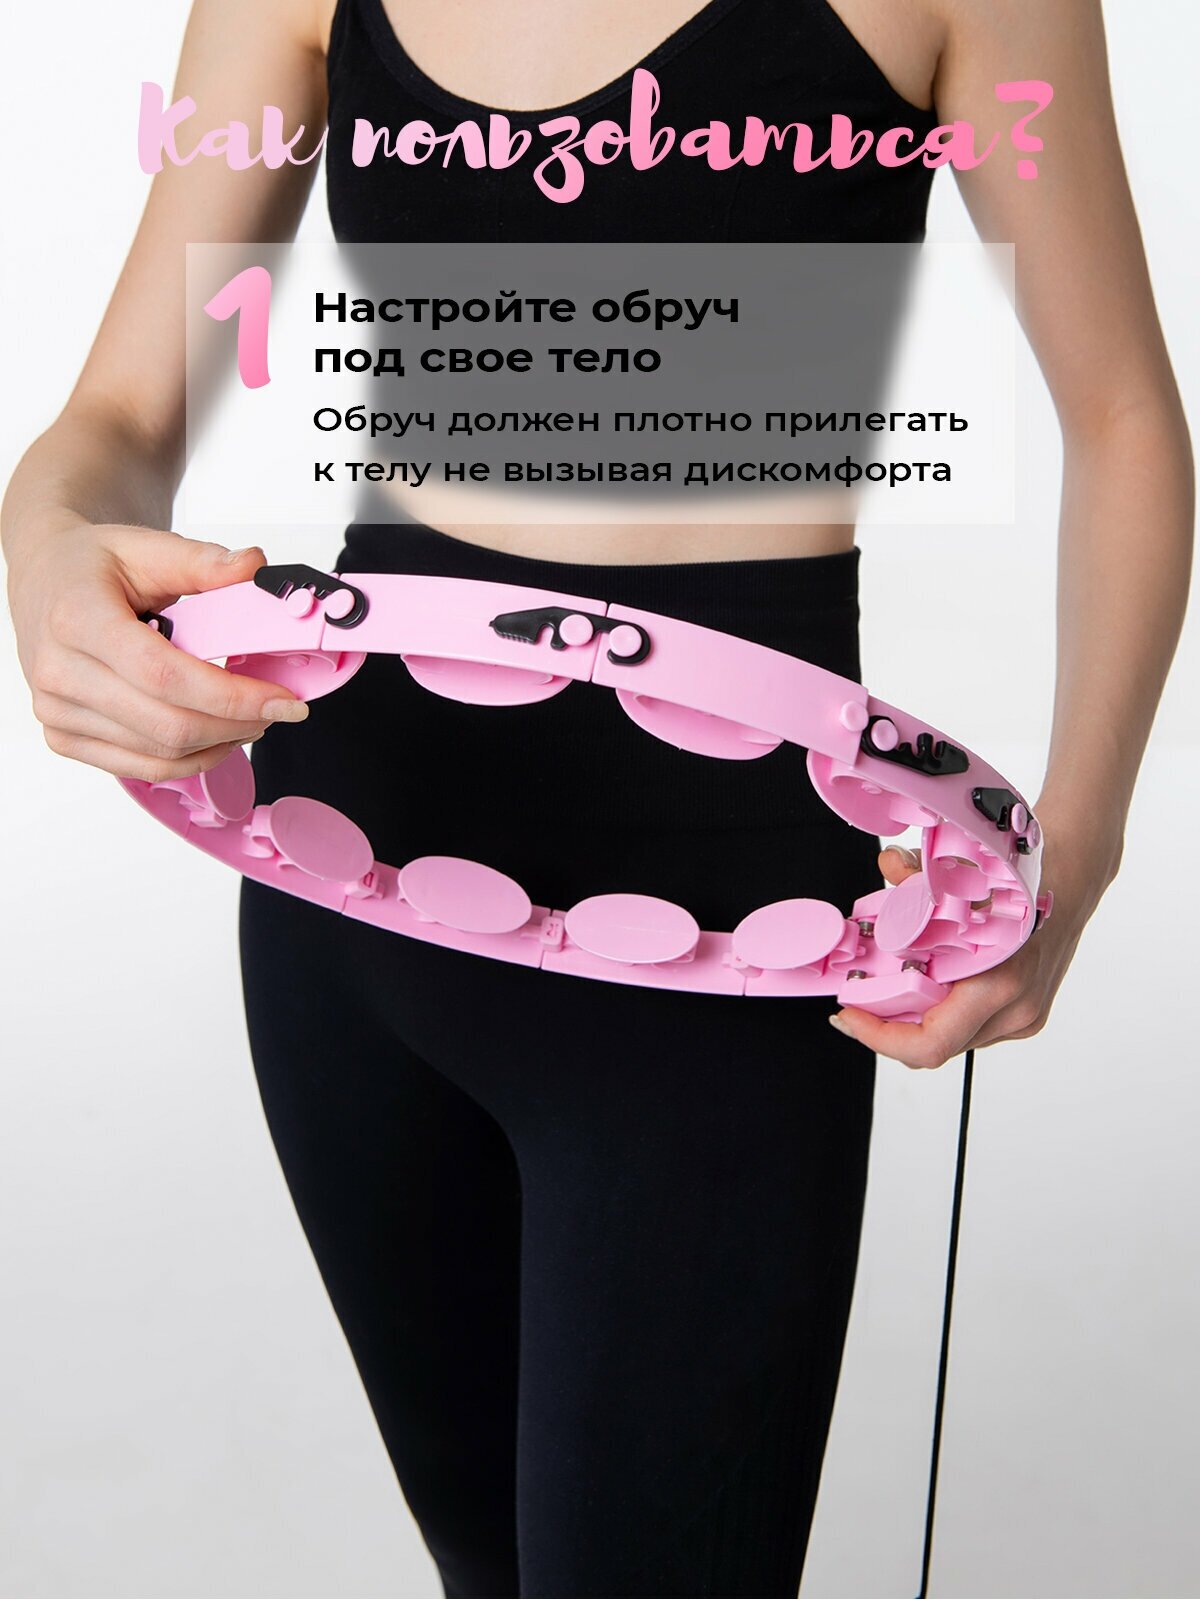 Массажный женский обруч хулахуп для похудения, утяжеленный пластмассовый спортивный обручь для фитнеса с утяжелителем, маленький разборный пластиковый